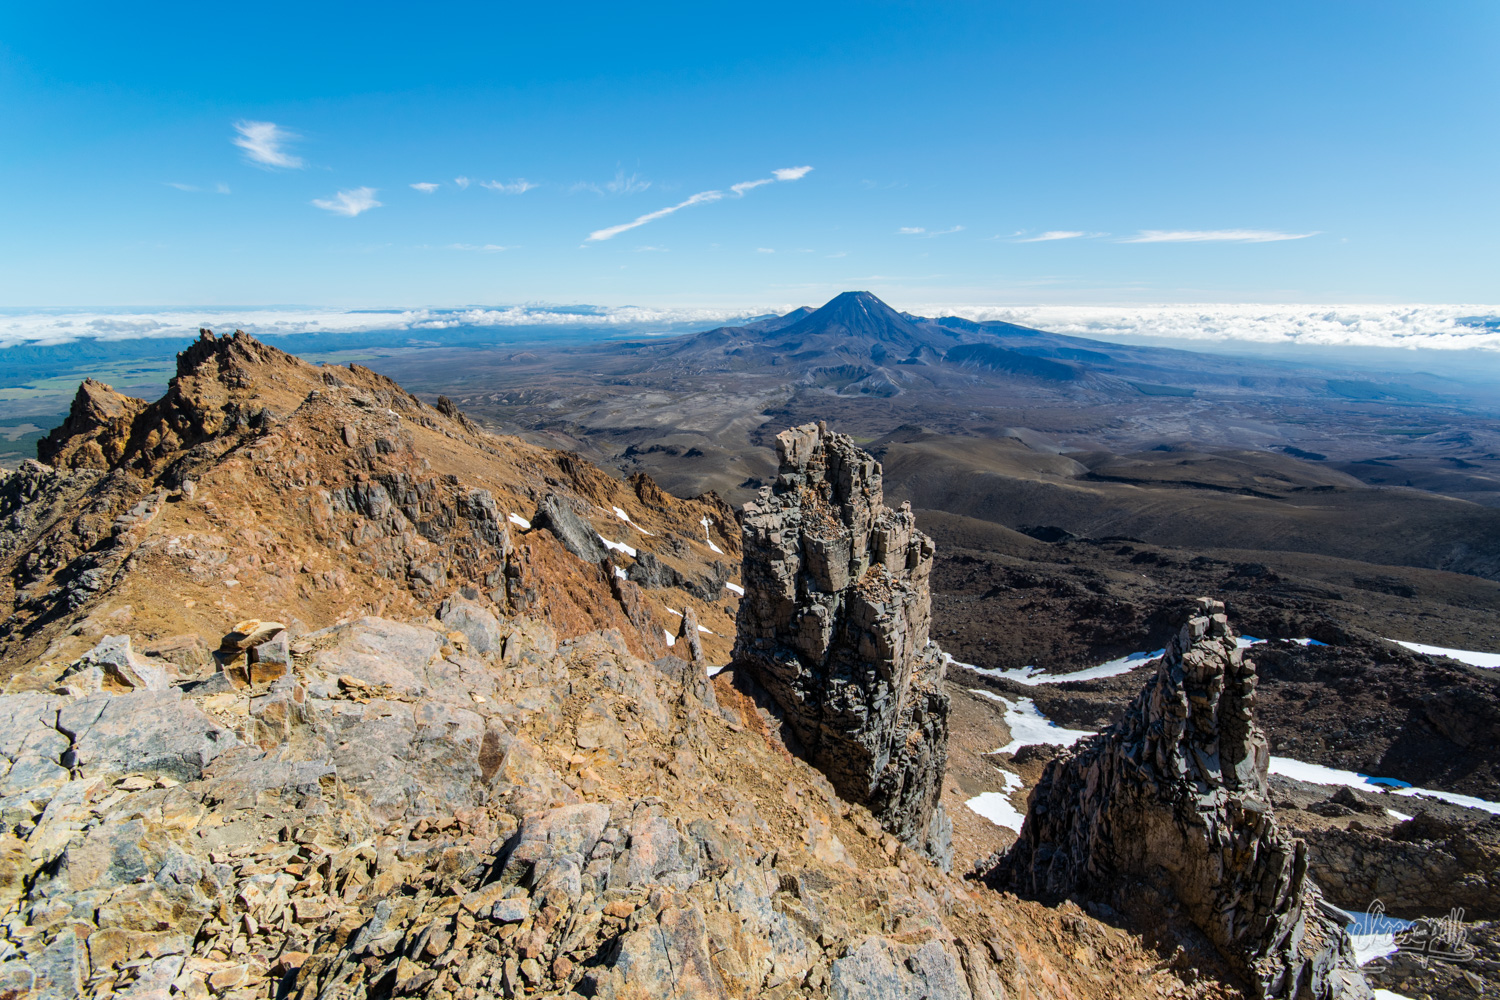 En escaladant le Mont Ruapehu, vue imprenable sur le Tongariro. Ou au sommet de l'Emyn Muil, vue imprenable sur le Mordor...